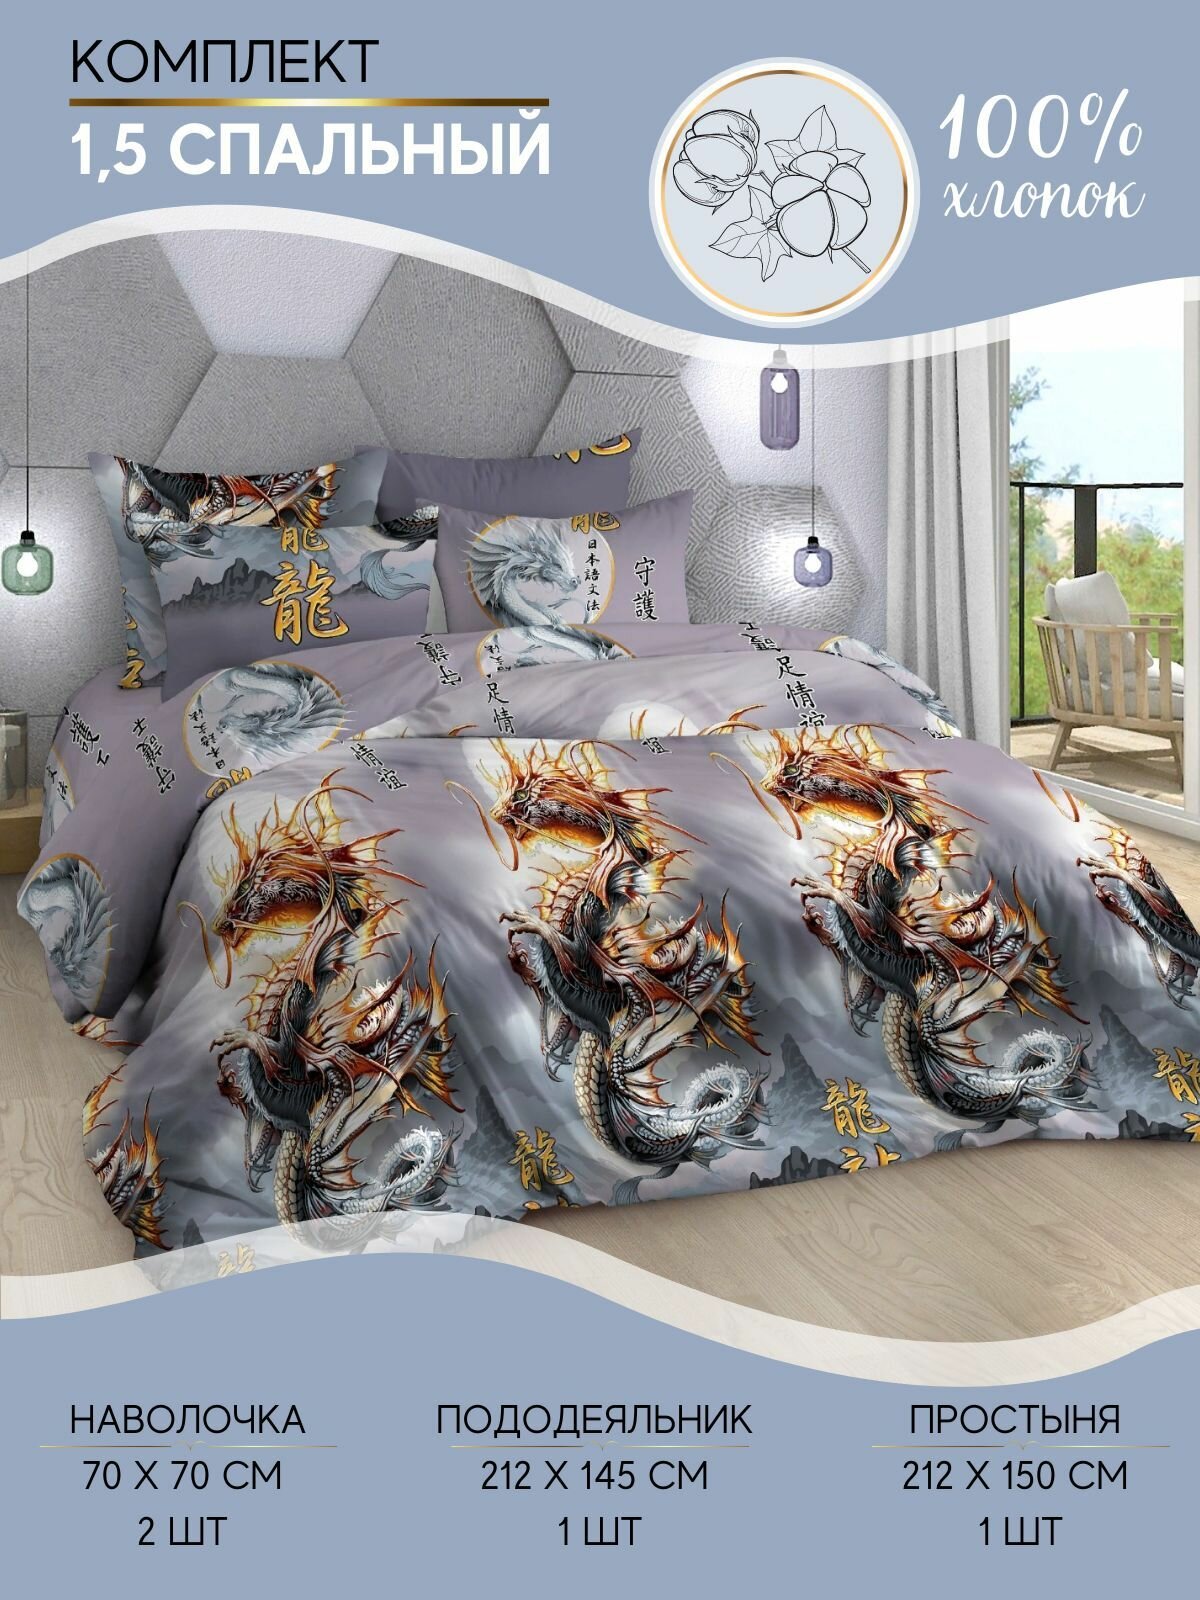 Комплект постельного белья Ночная Серенада "Год дракона" 1,5 спальный, Бязь, наволочки 70x70см